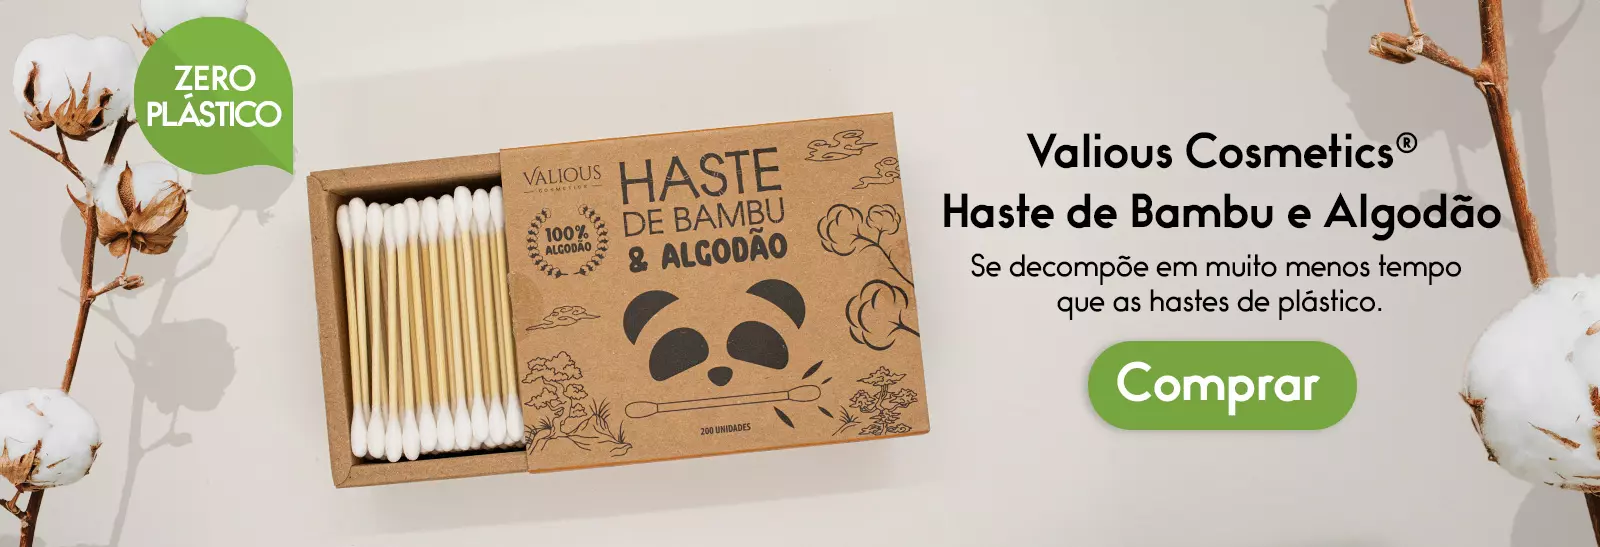 valious-cosmetics-hastes-de-bambu-e-algodão-akora-brasil-2023-11-16-wide